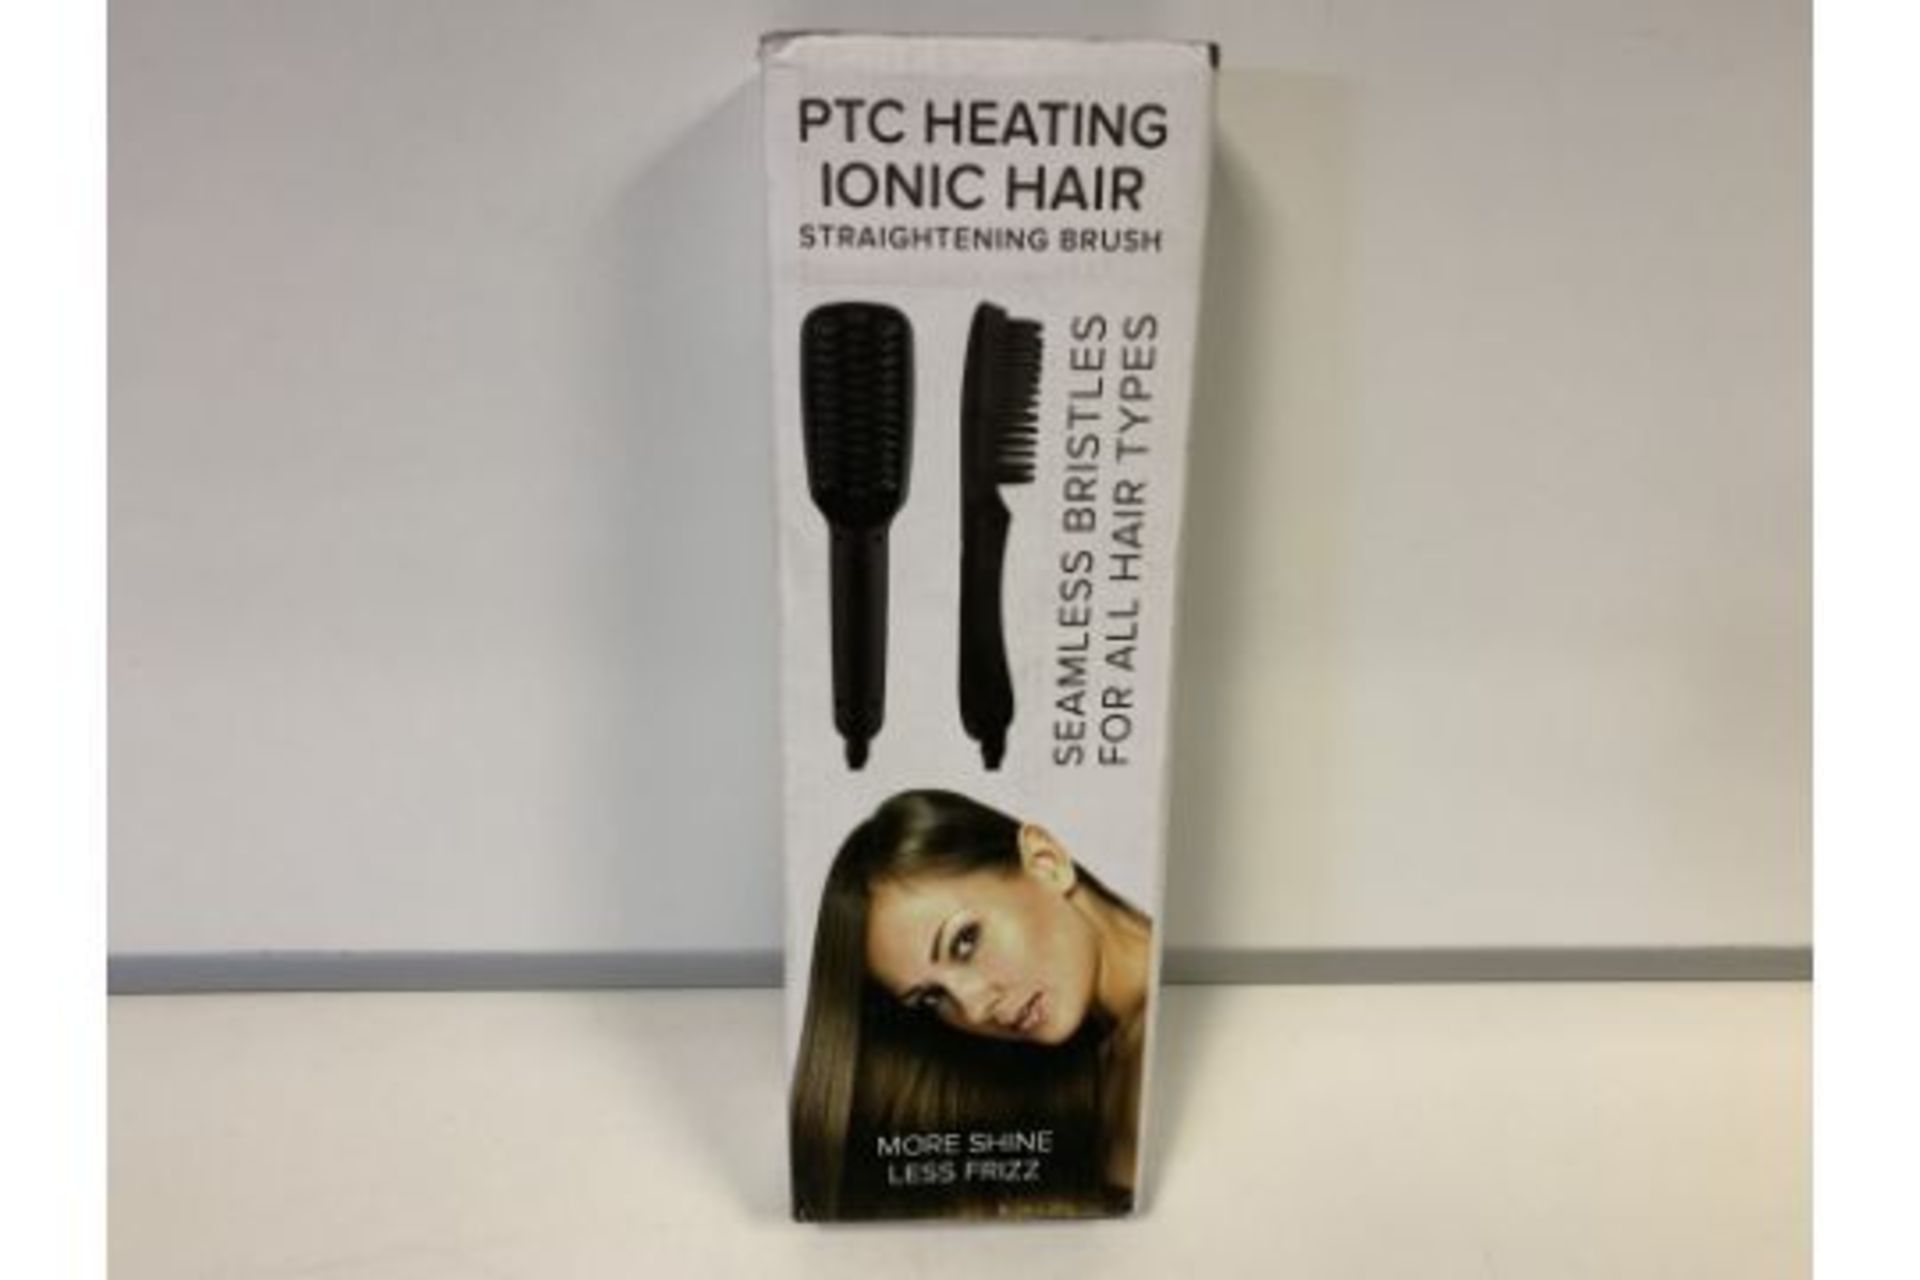 2 X NEW BOXED PTC HEATING IONIC HAIR STRAIGHTENING BRUSHES